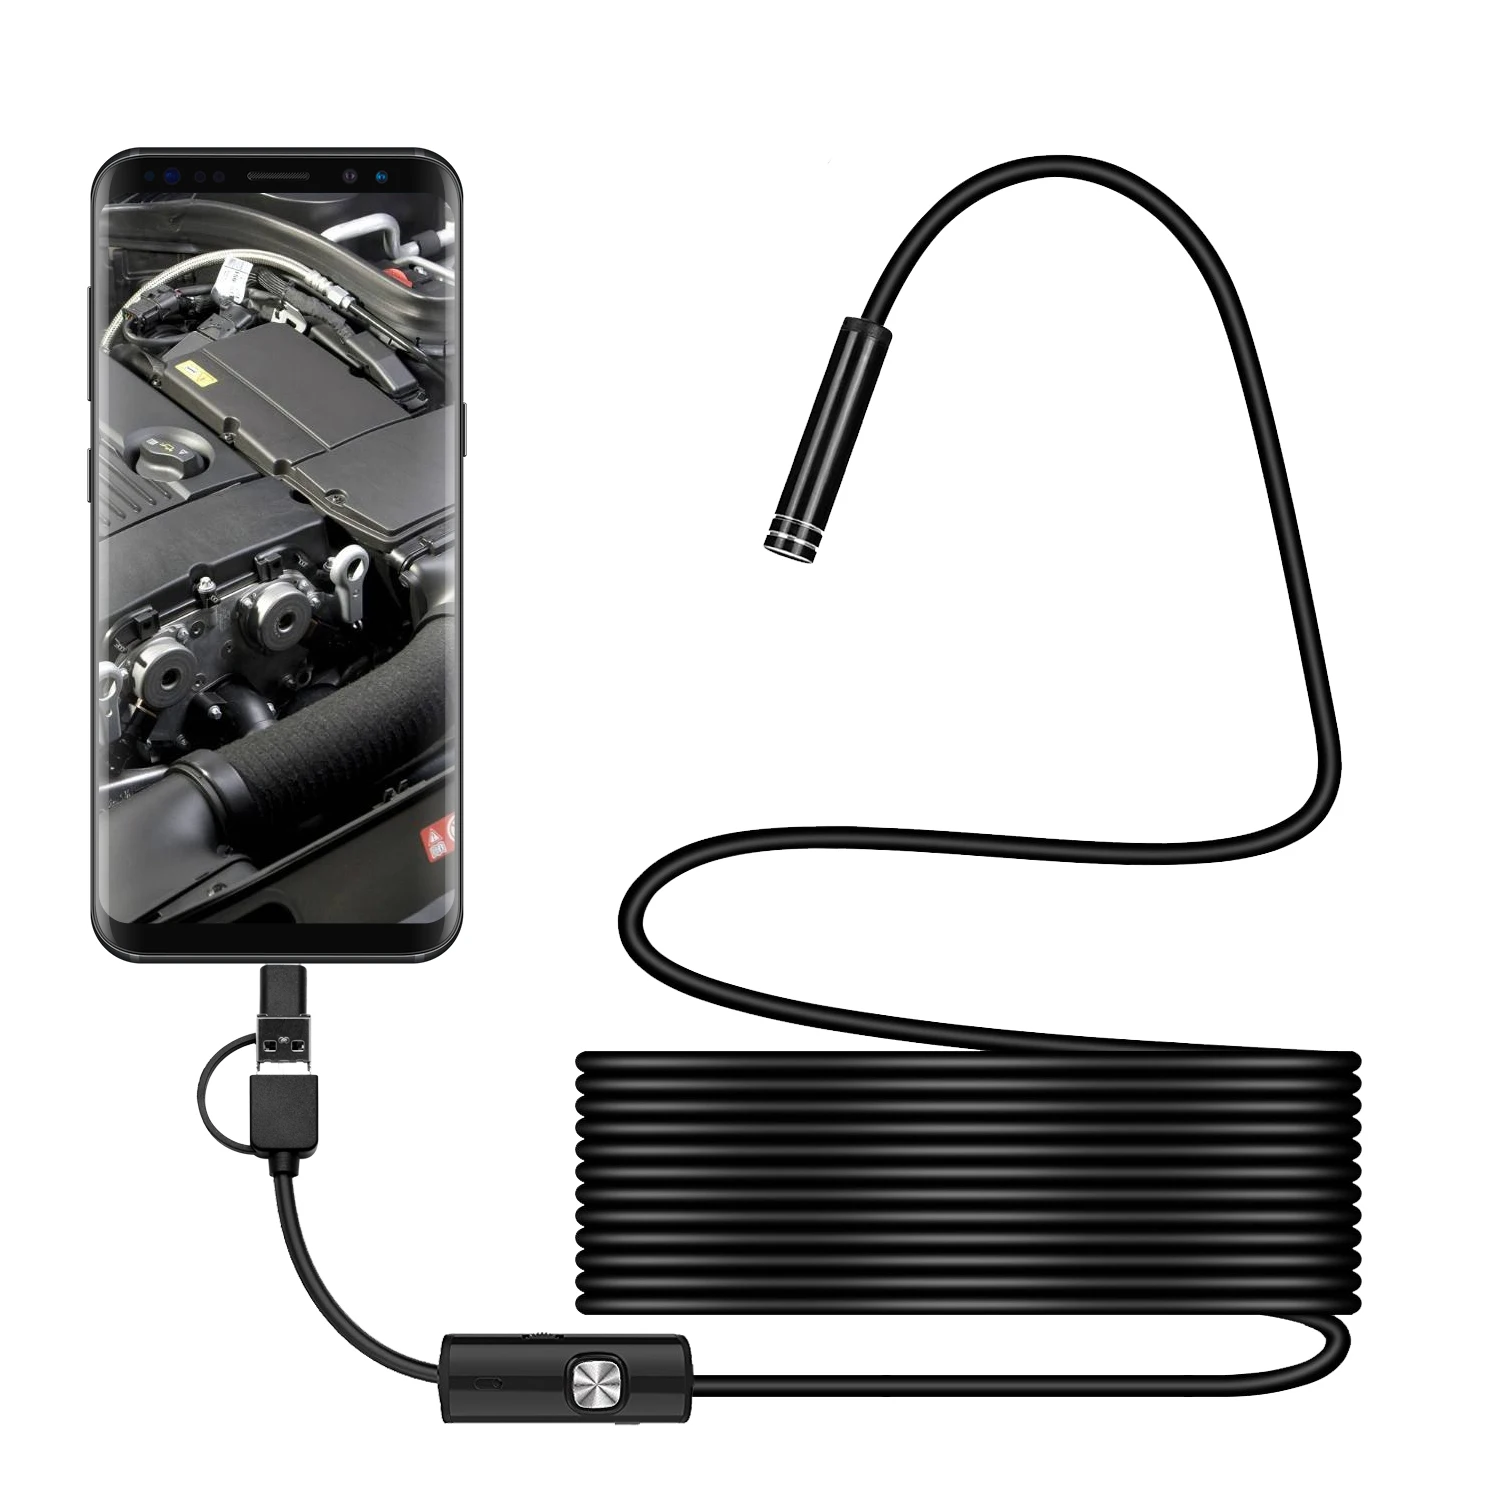 Эндоскоп 3.5м Deko we-3.5. USB камера эндоскоп для андроид. USB Camera для эндоскопа. Камера - гибкий эндоскоп USB (Micro USB), 2м, Android/PC. Камера гибкая для телефона с подсветкой